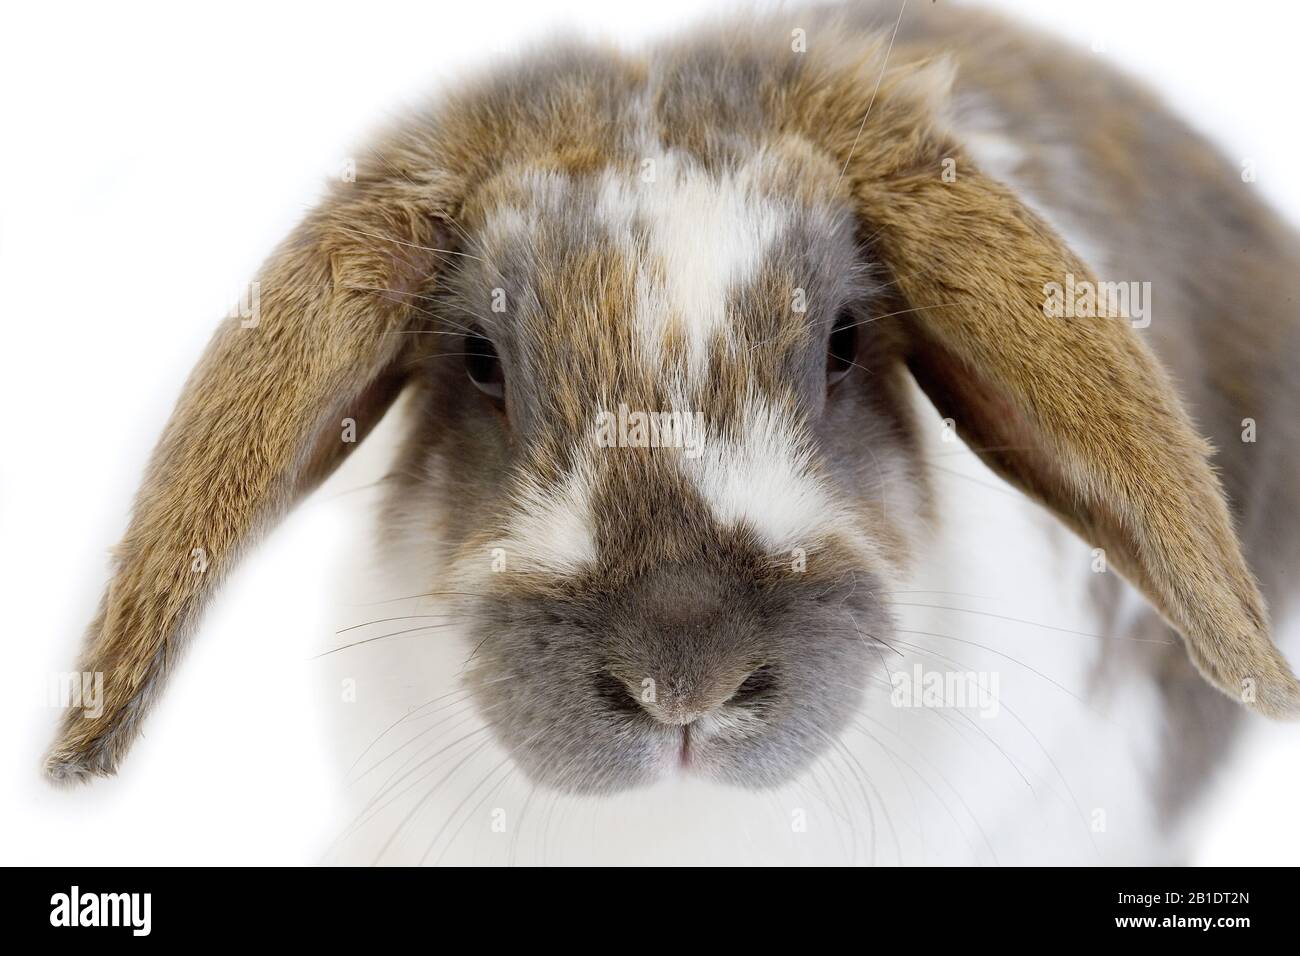 Lop-Eared Conejo doméstico, Adulto contra el fondo blanco. Foto de stock